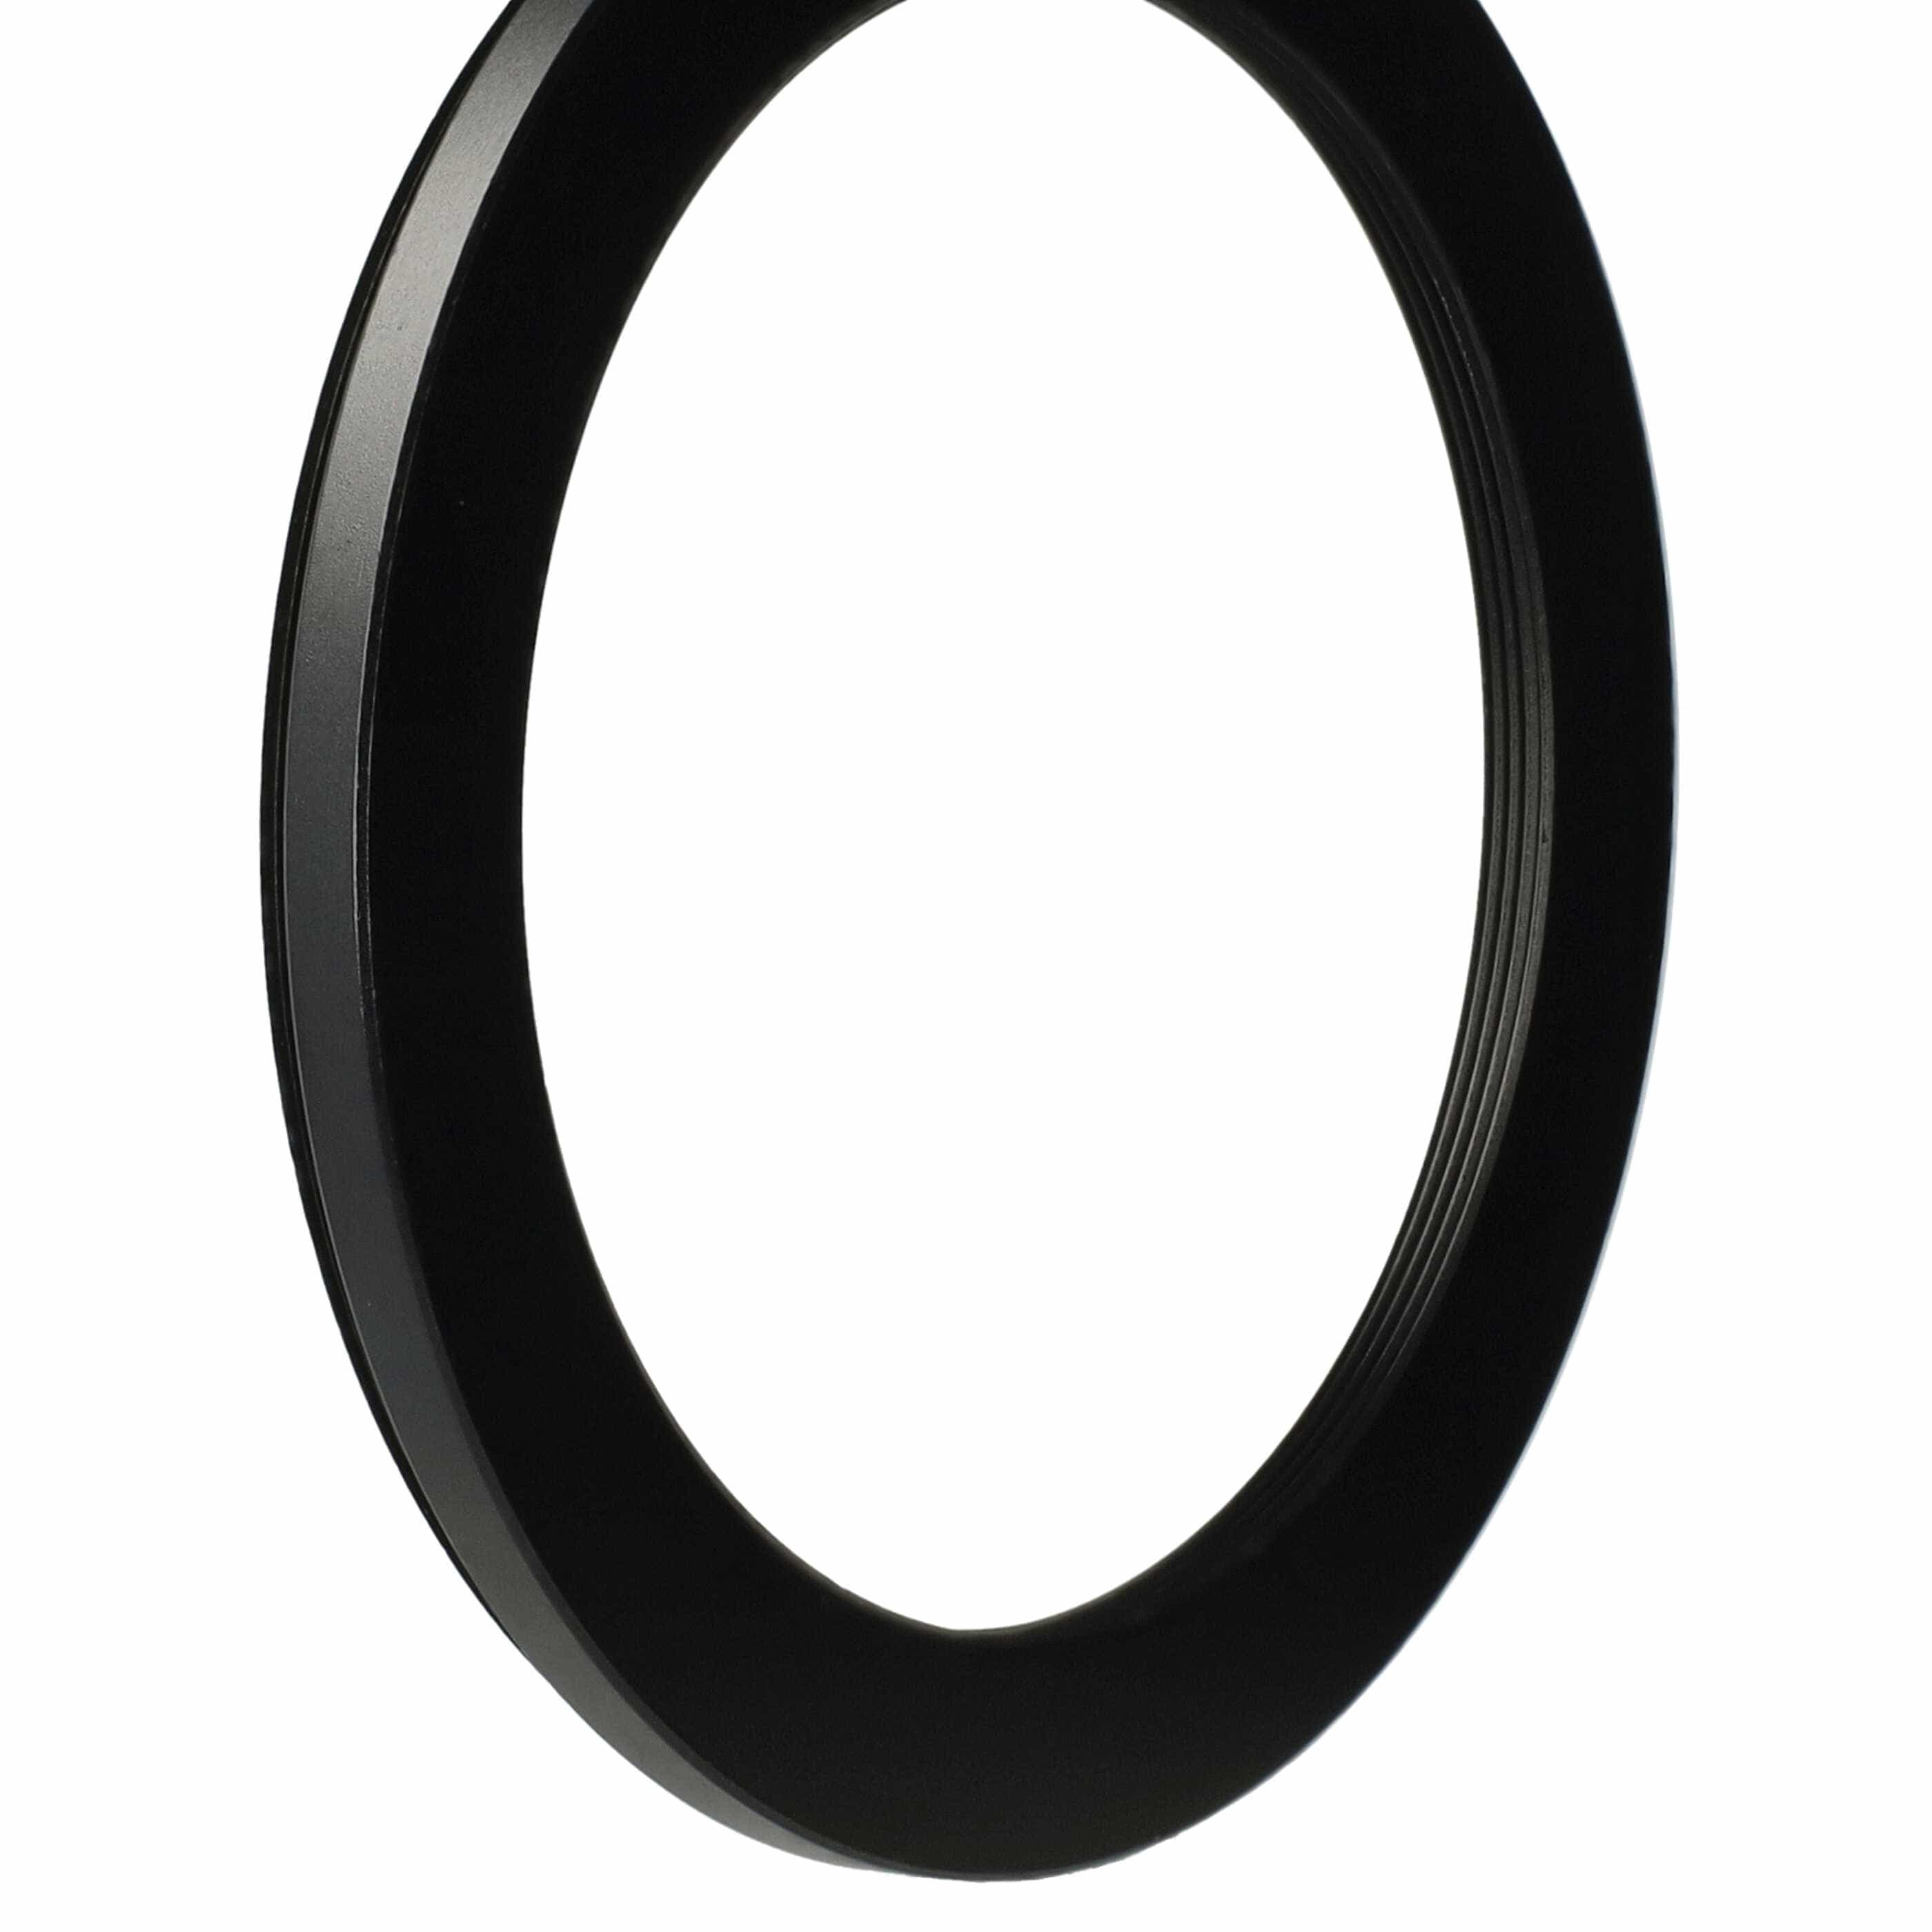 Step-Down-Ring Adapter von 77 mm auf 62 mm passend für Kamera Objektiv - Filteradapter, Metall, schwarz